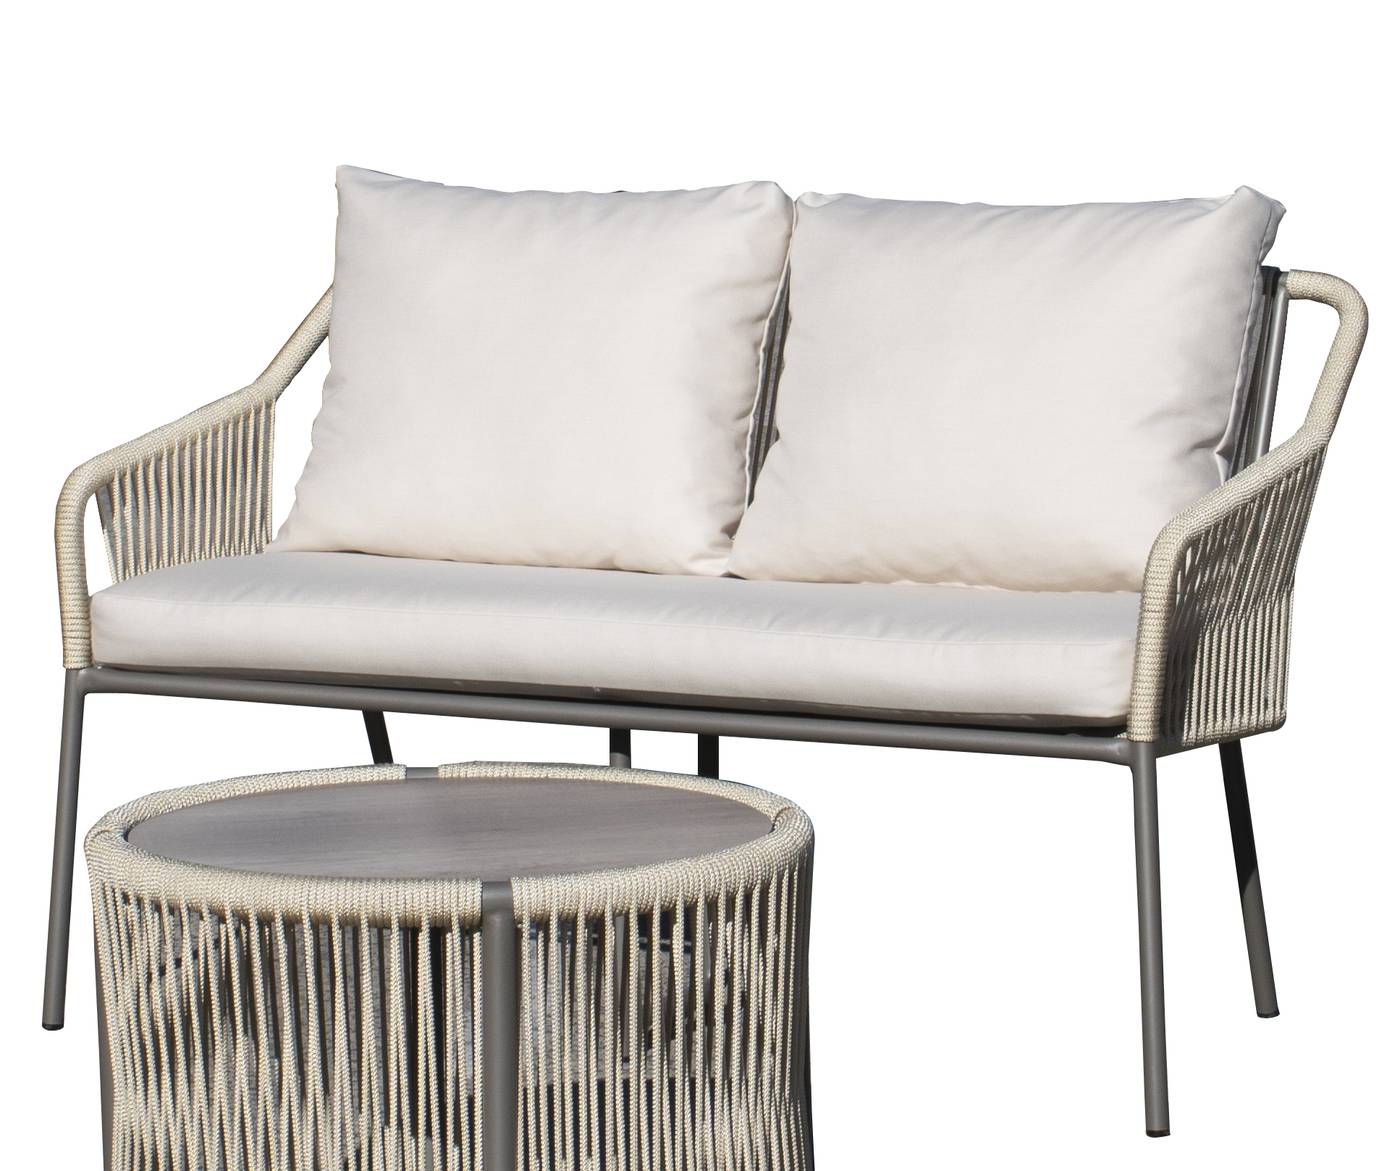 Sofá relax 2 plazas con cojines desenfundables. Estructura de aluminio color blanco, antracita o champagne recubierta de cuerda